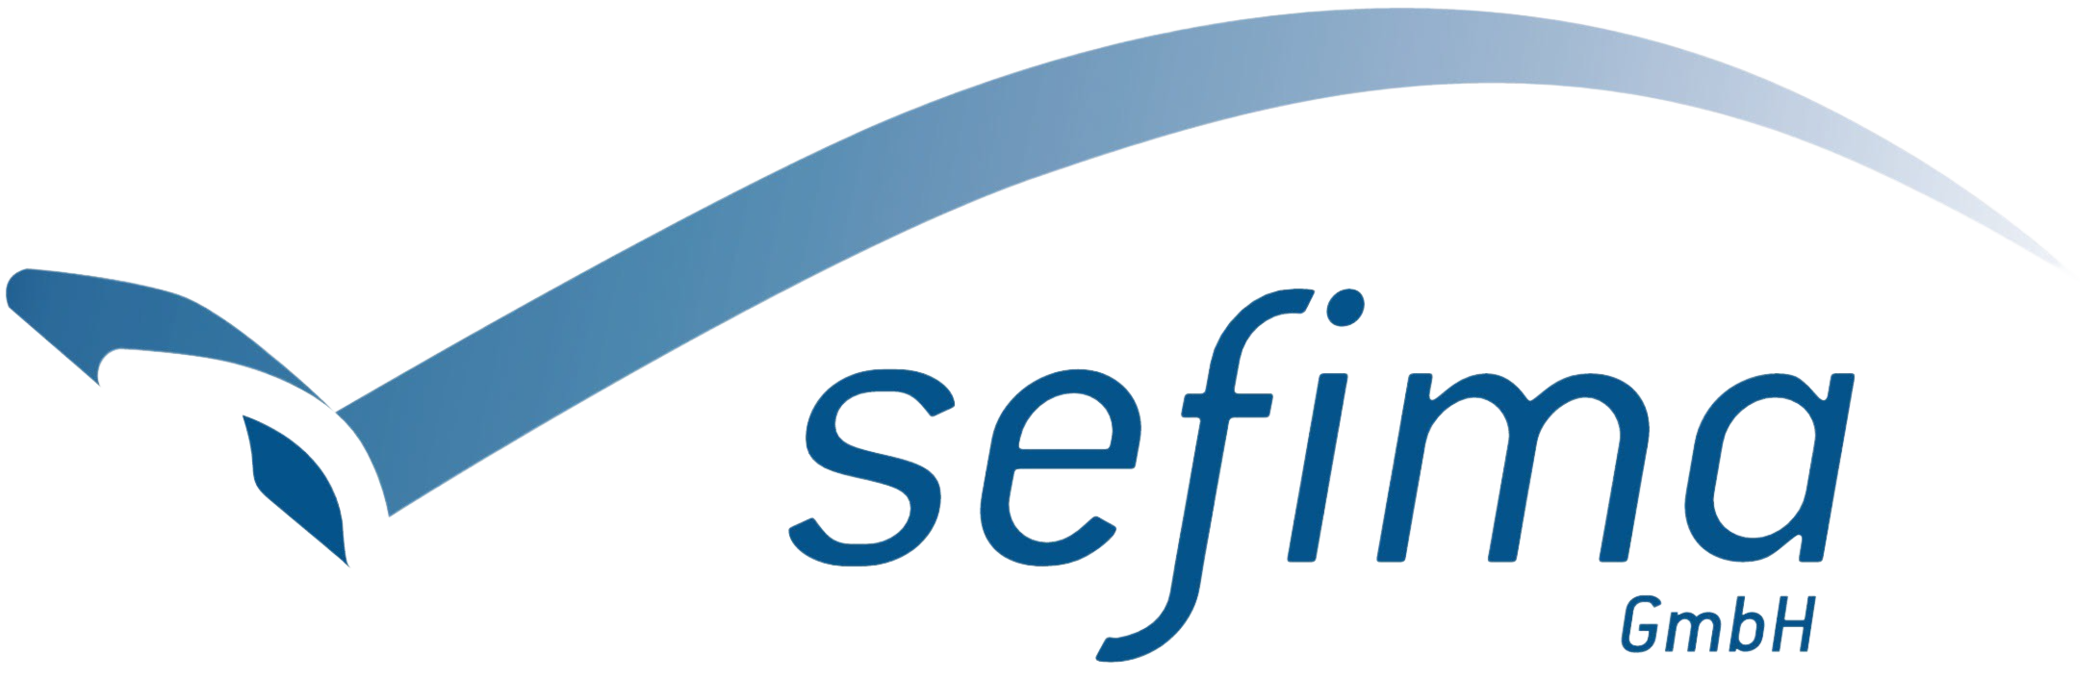 Sefima GmbH - Ihr Baufinanzierer